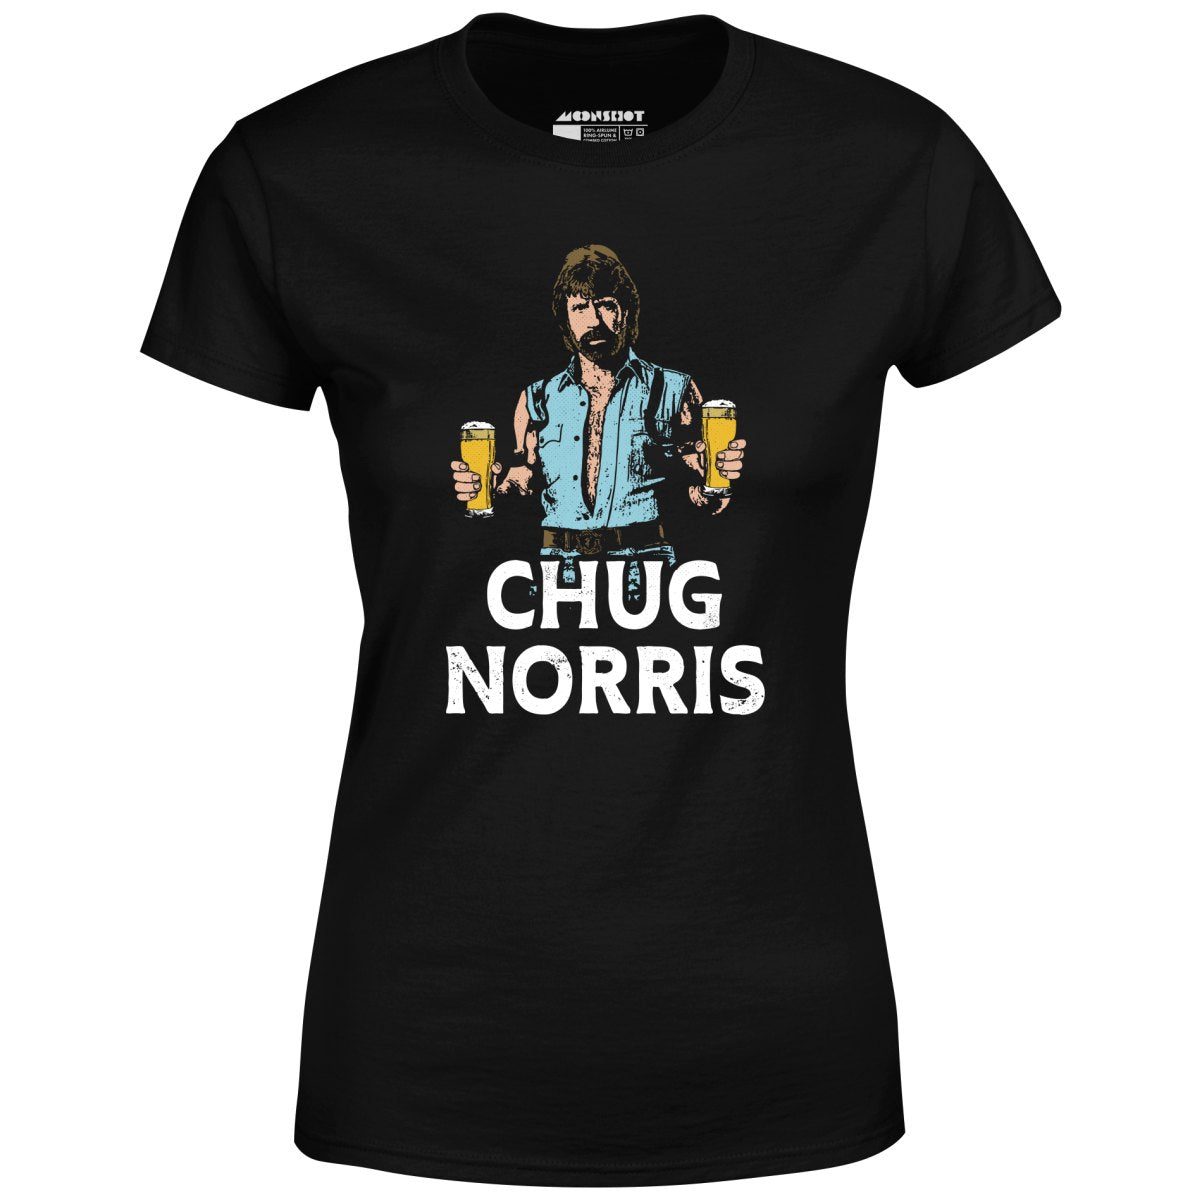 Chug Norris - Women's T-Shirt